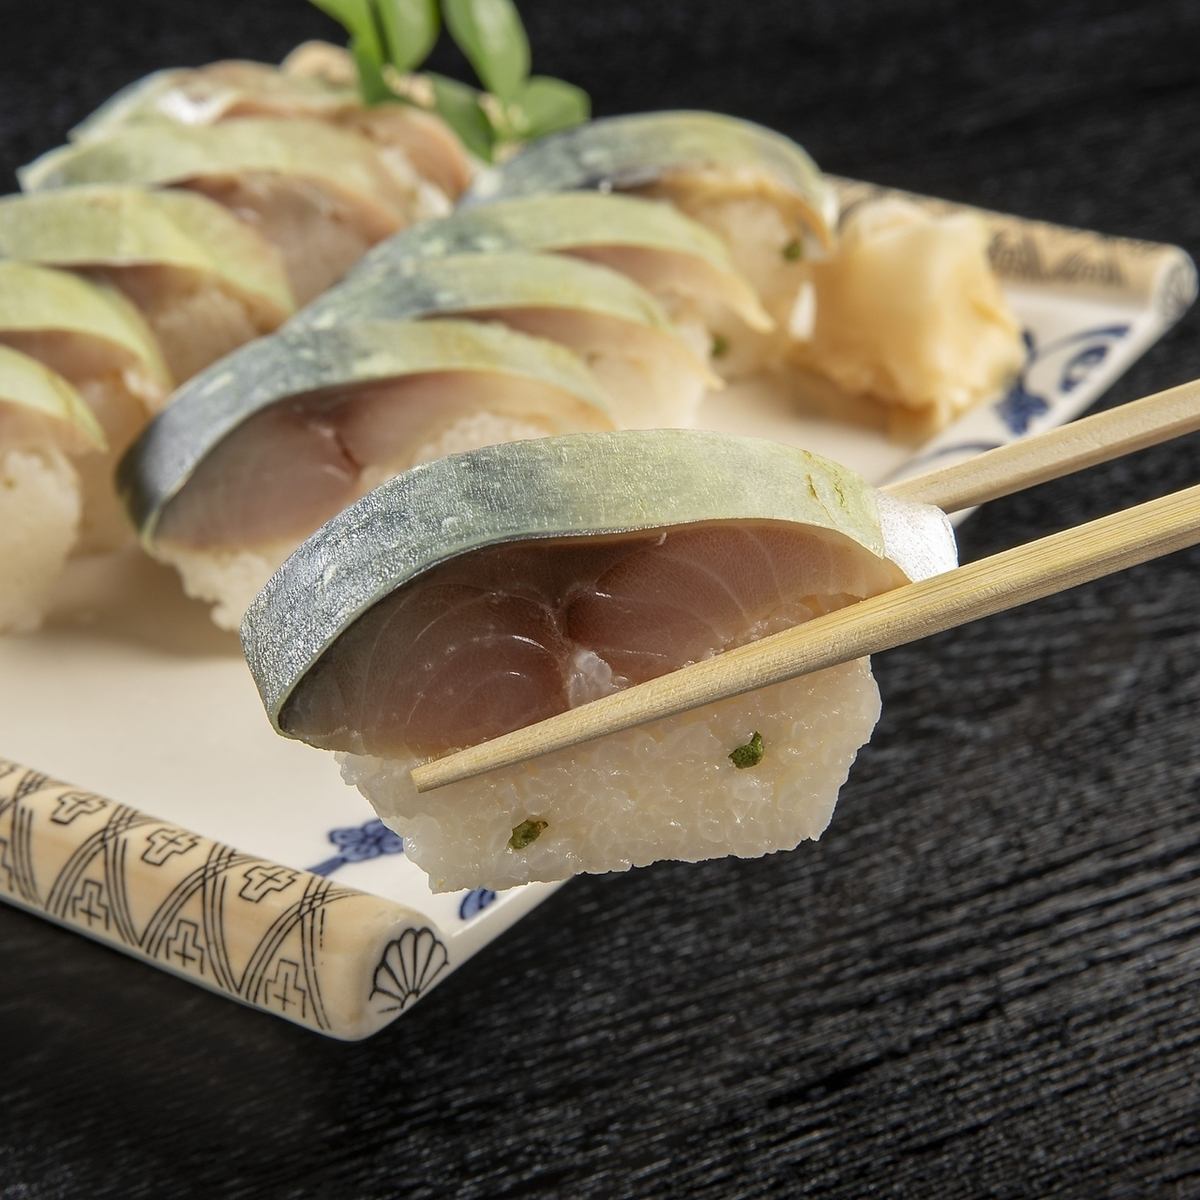 成立于112年前。一定要尝尝Sushikei的鲭鱼寿司，多年来深受喜爱、历史悠久的口味！